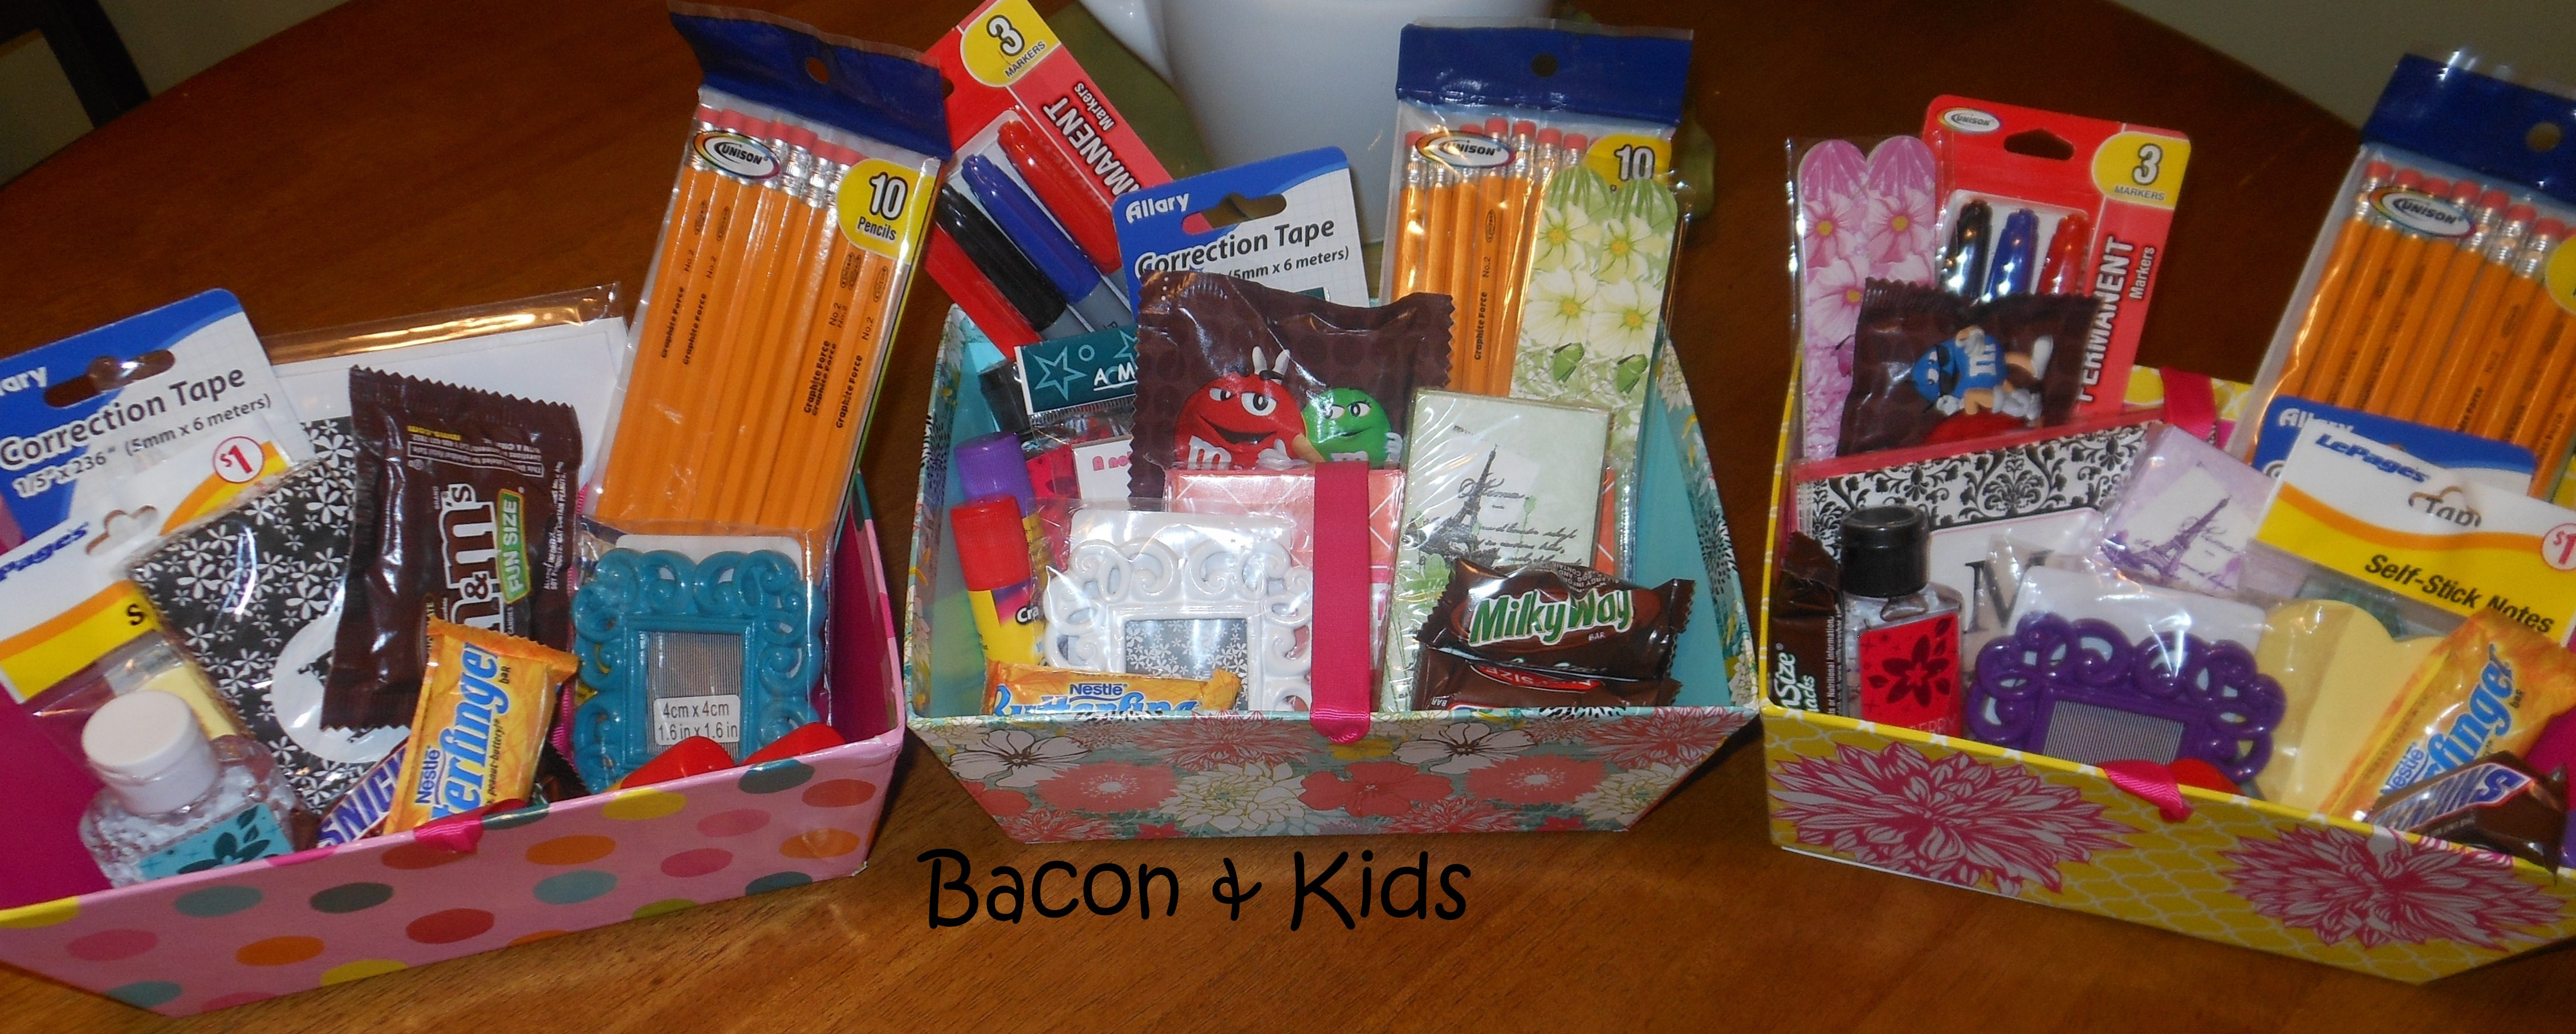 Teacher Gift Basket Ideas
 teacher appreciation week